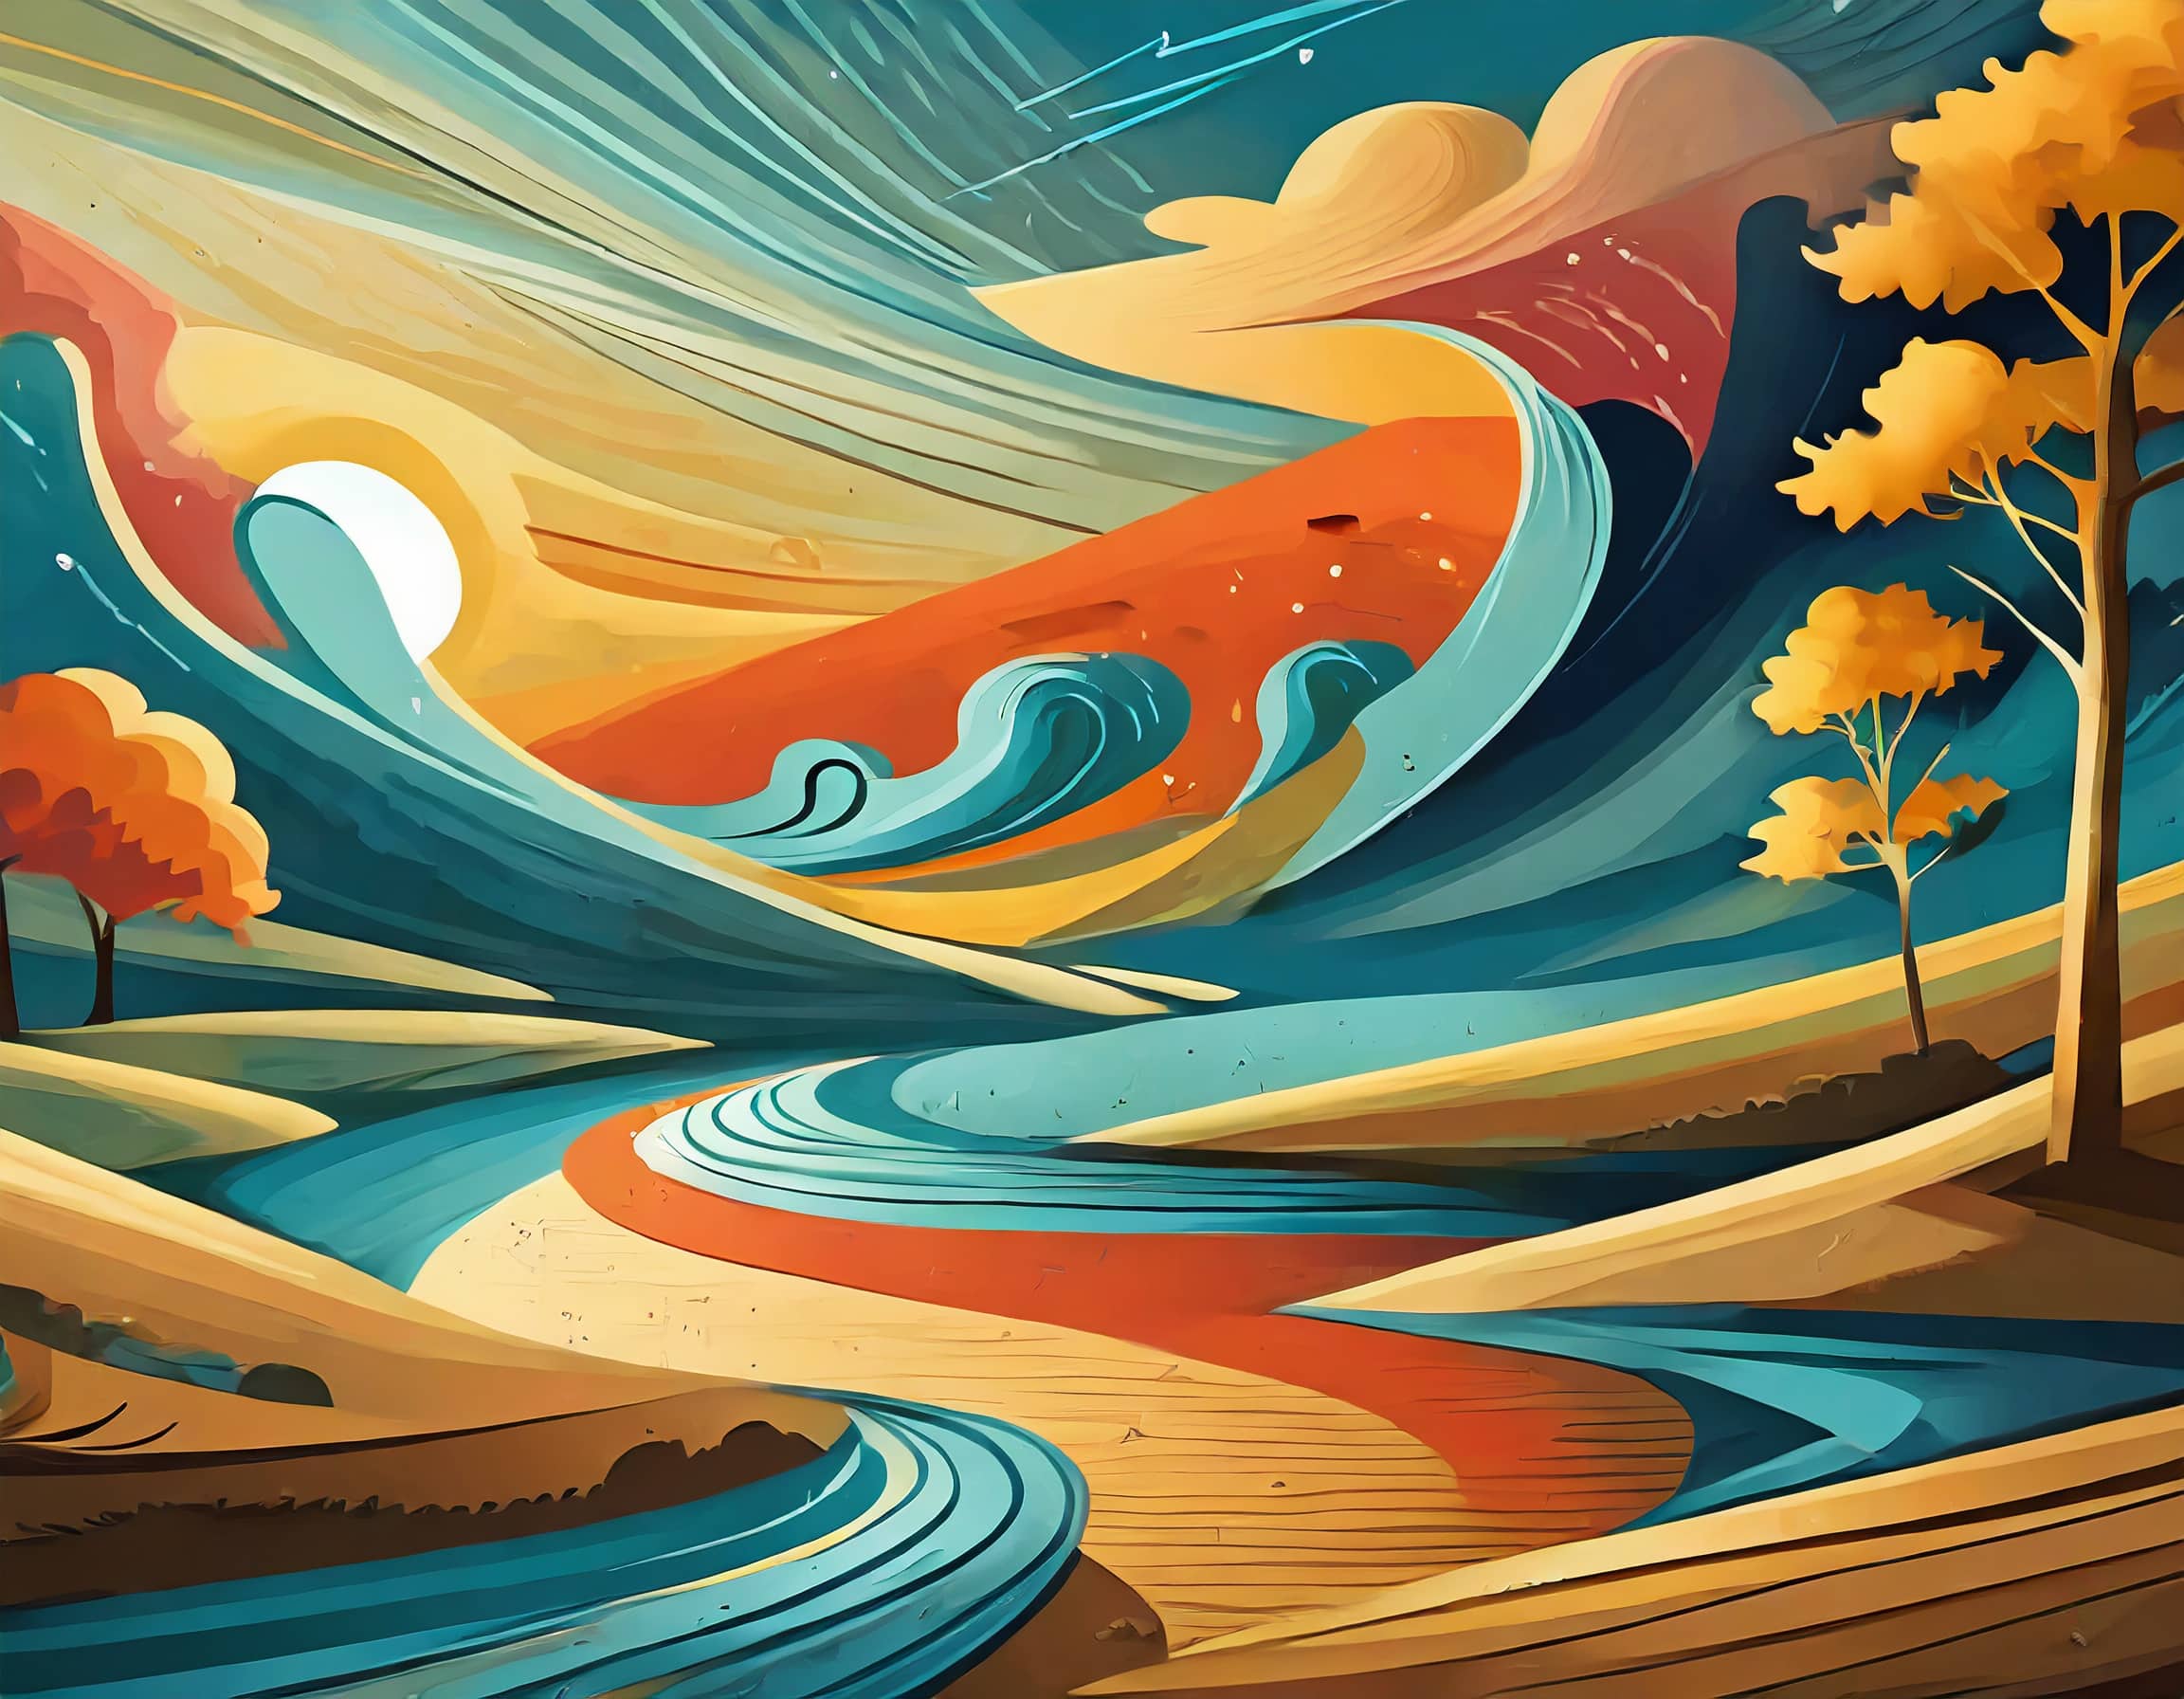 Stilisierte, lebendige Illustration einer Landschaft mit wirbelnden Flüssen, abstrakten Bäumen in Herbstfarben und einem dynamisch geschwungenen Himmel, der Tag und Nacht zu verschmelzen scheint.